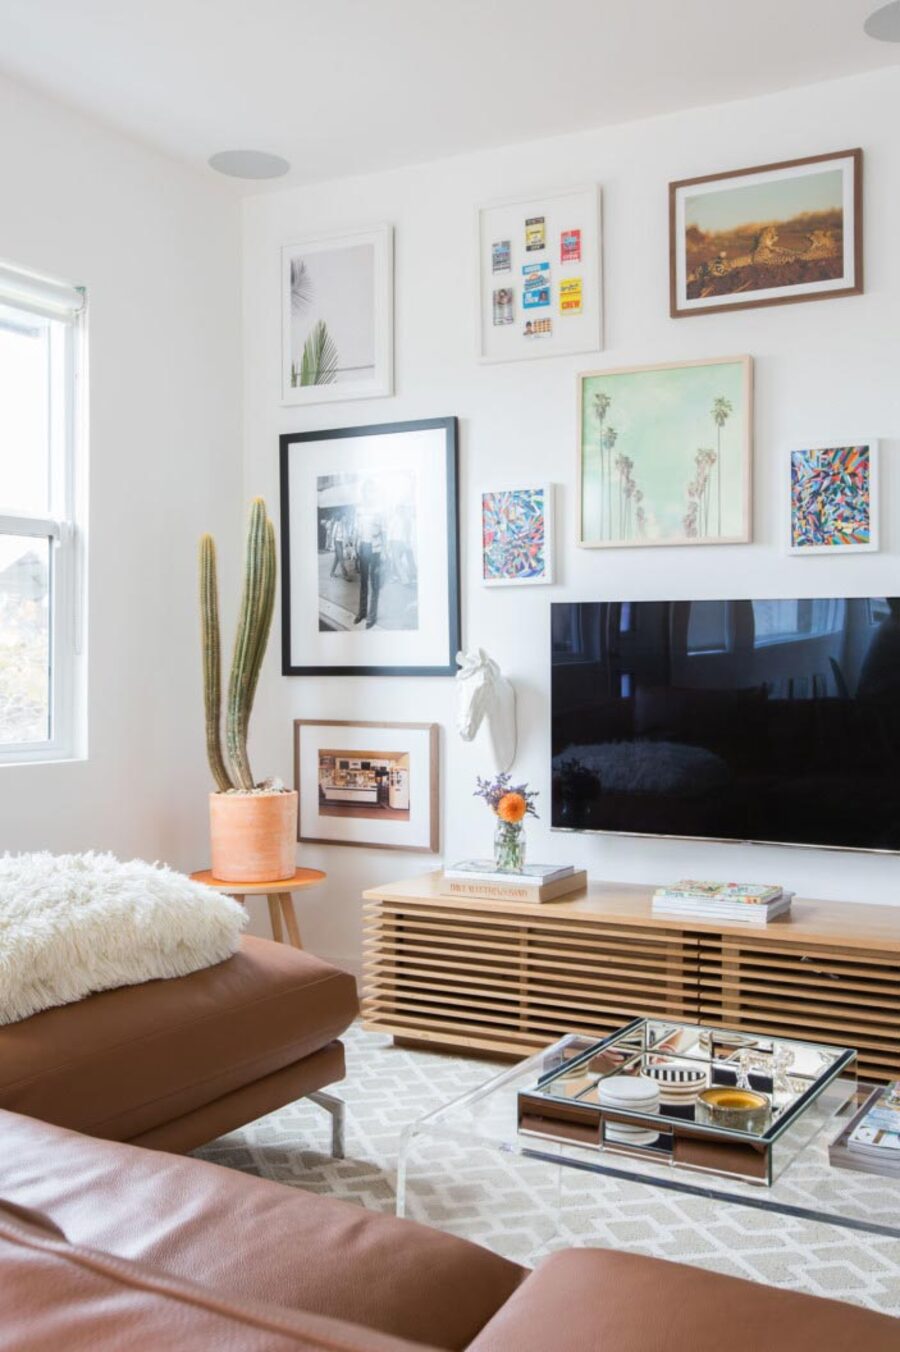 Muro galería con televisor colgado de la pared. Cuadros de diferentes formas, tamaños, colores y marcos. Mueble bajo de madera, mesa de centro transparente, sofá café y alfombra gris con blanco.